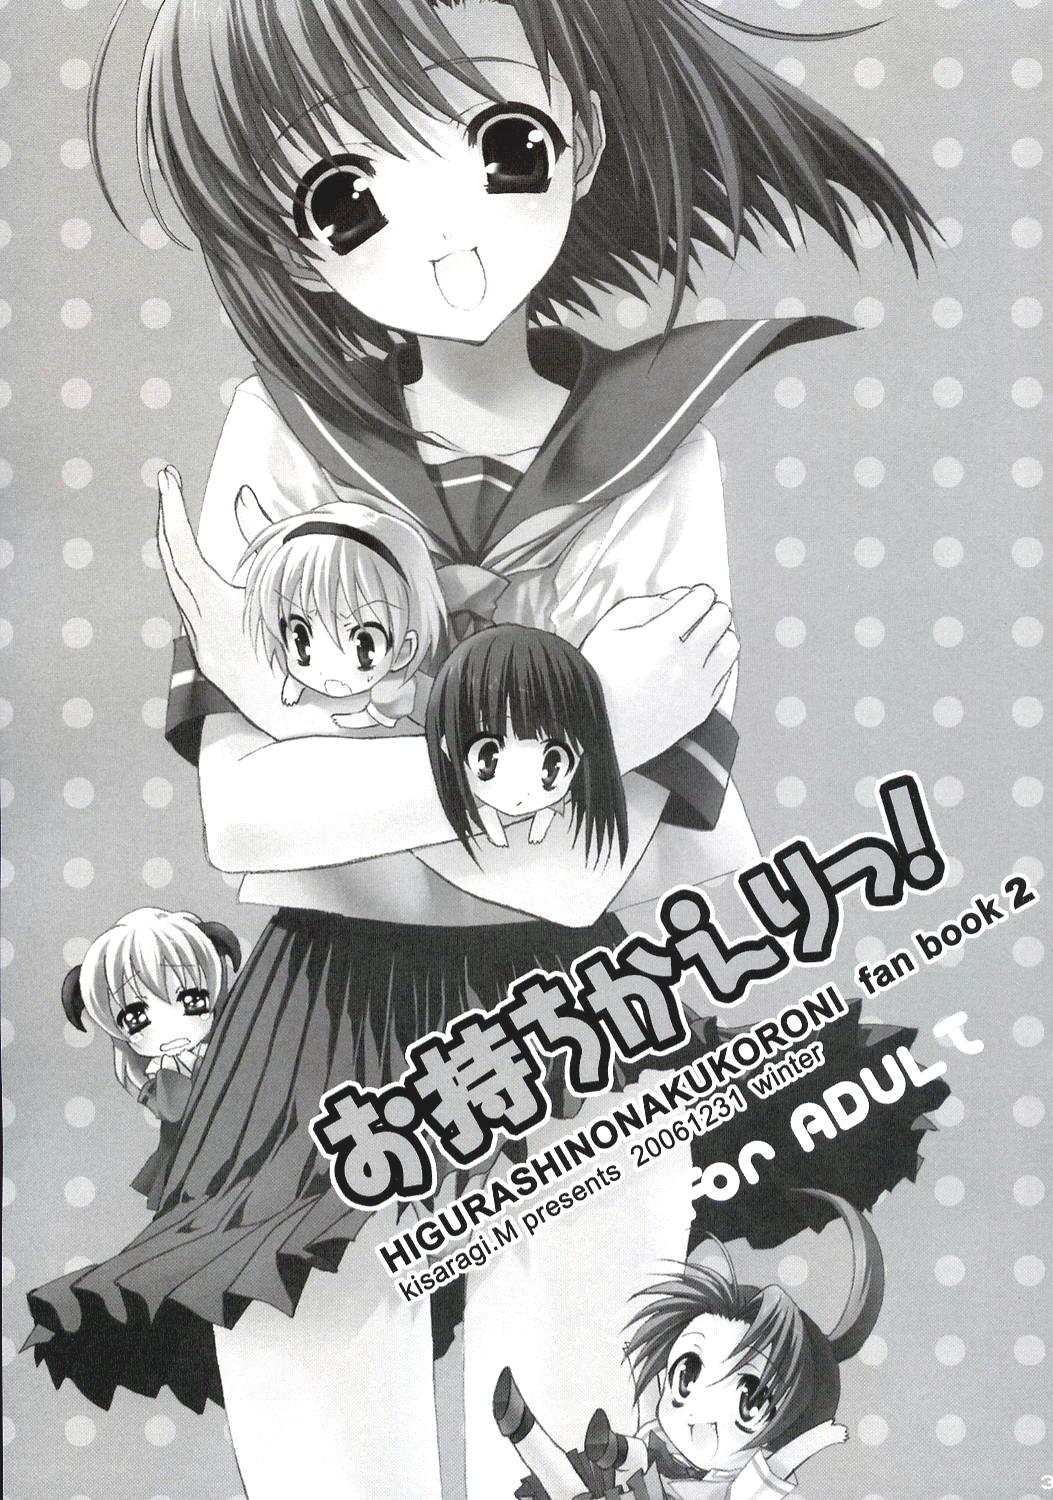 White Omochikaeri! - Higurashi no naku koro ni Nerd - Page 2